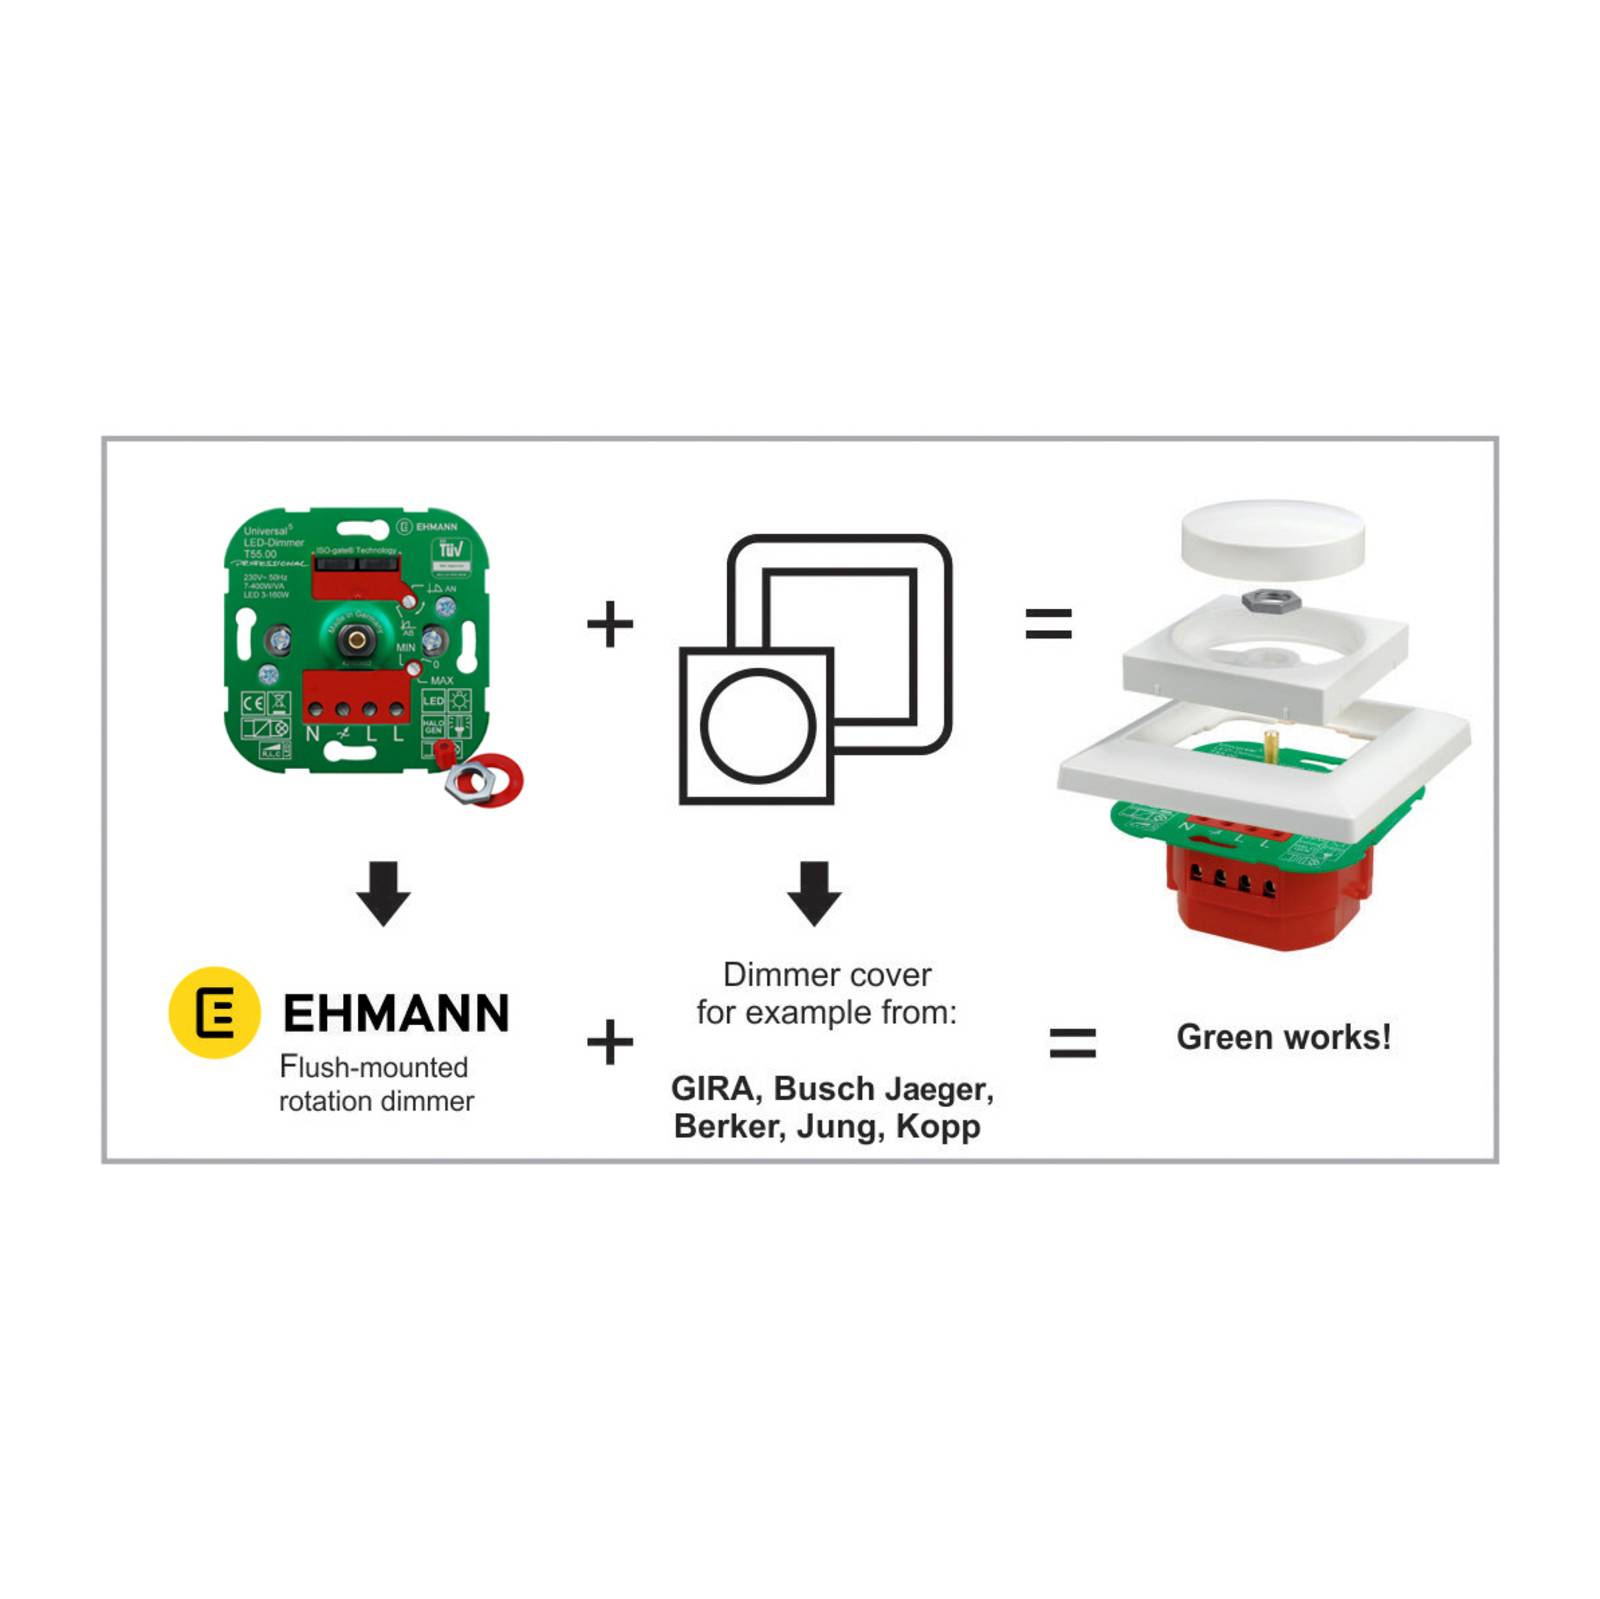 EHMANN T73 elektronisches Potentiometer für EVG